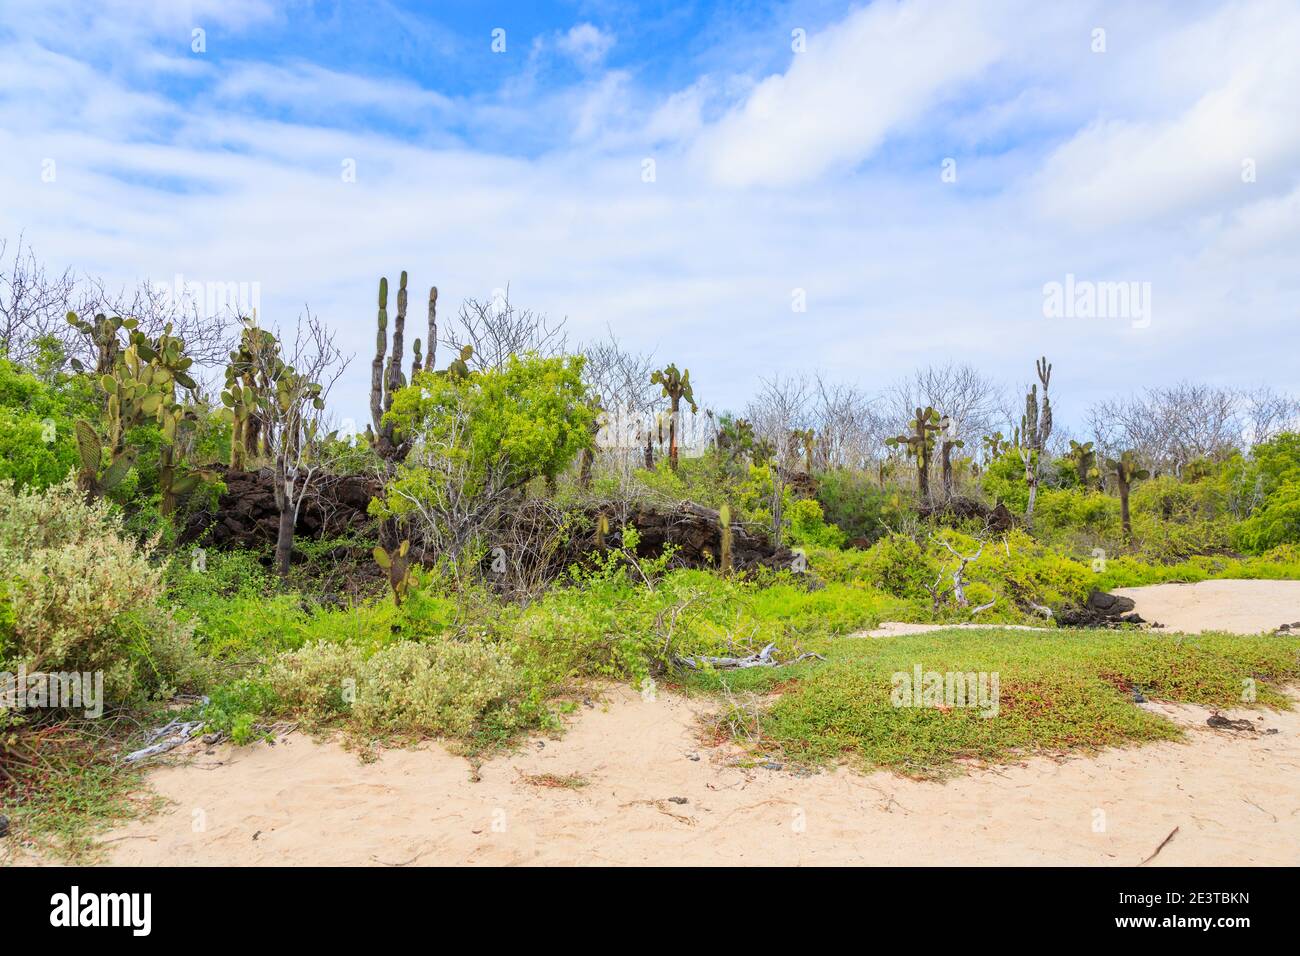 Playa de arena y vegetación costera típica con cactus Opuntia en la colina del Dragón, Isla Santa Cruz, Islas Galápagos, Ecuador, Sudamérica Foto de stock